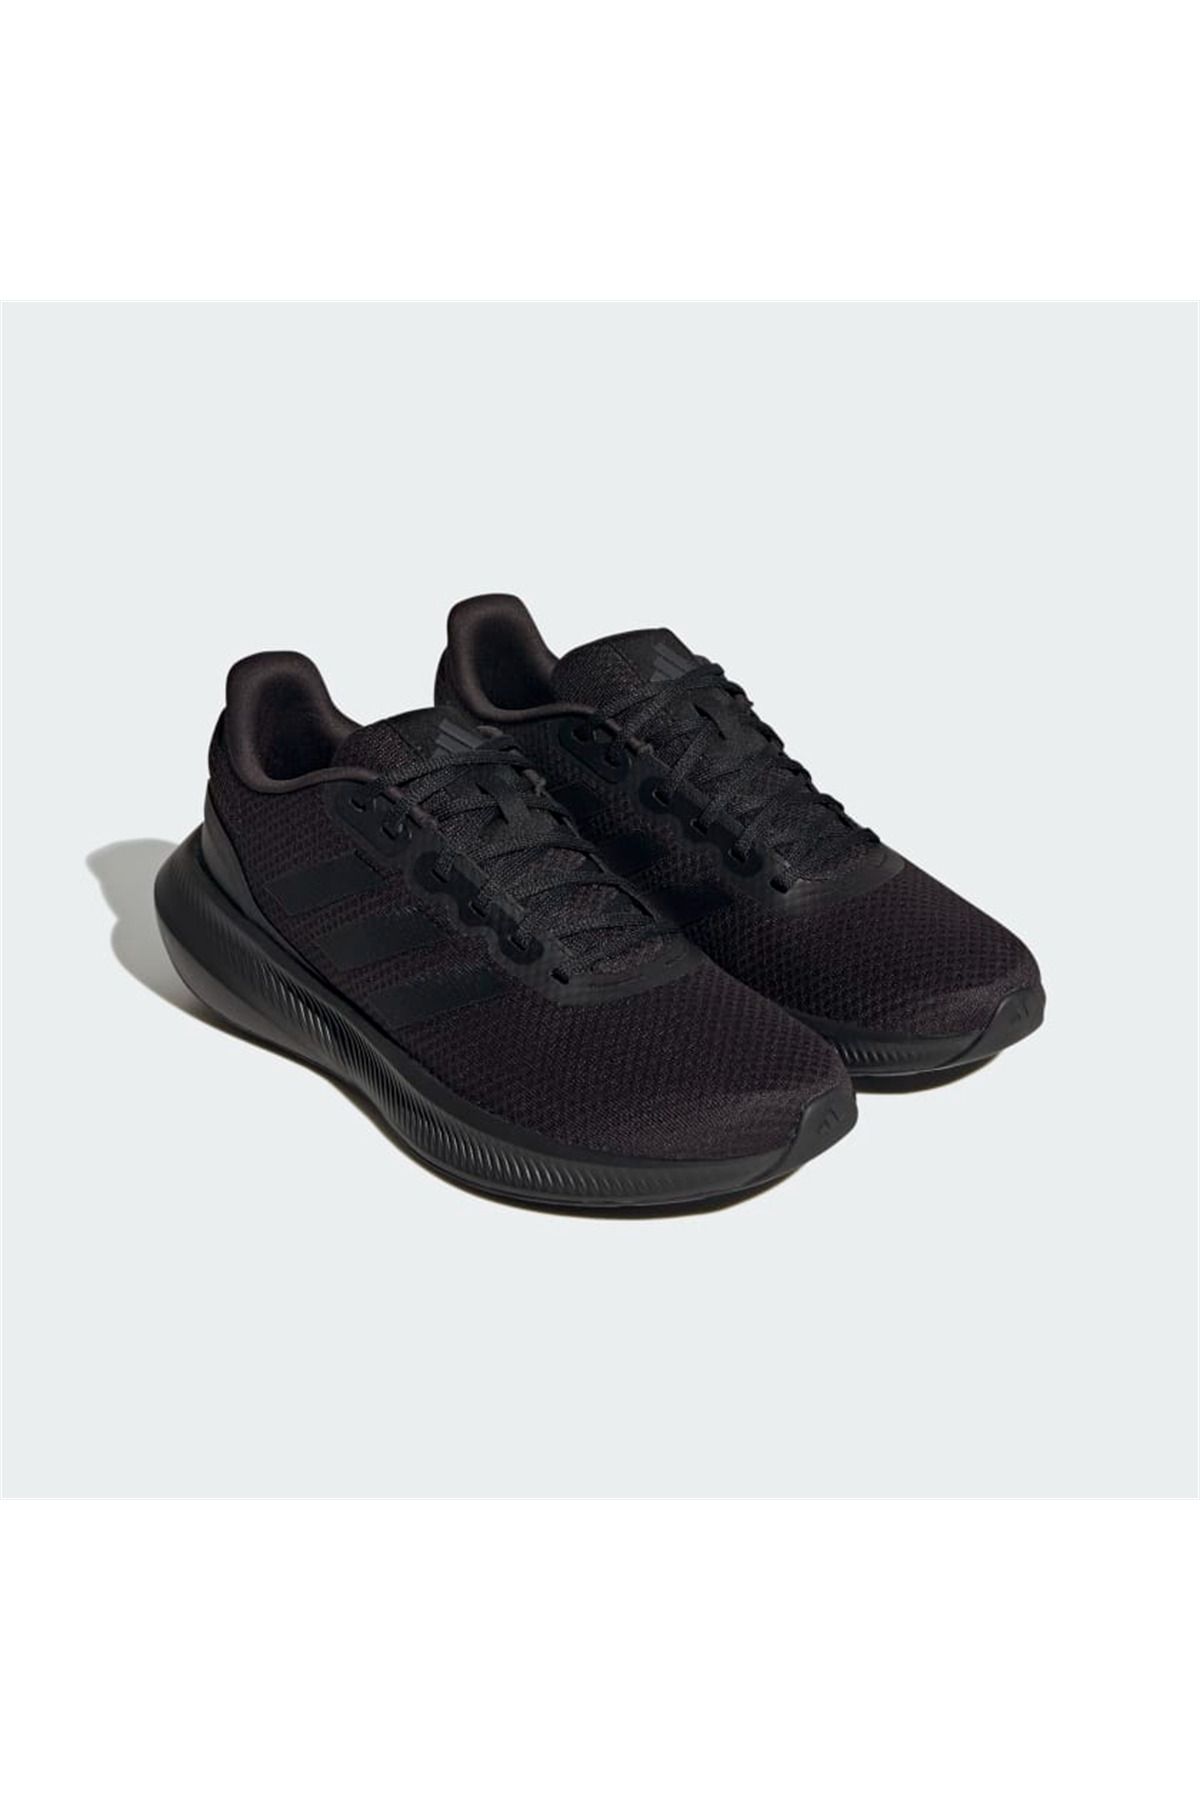 adidas Runfalcon 3.0 Erkek Koşu Ayakkabı